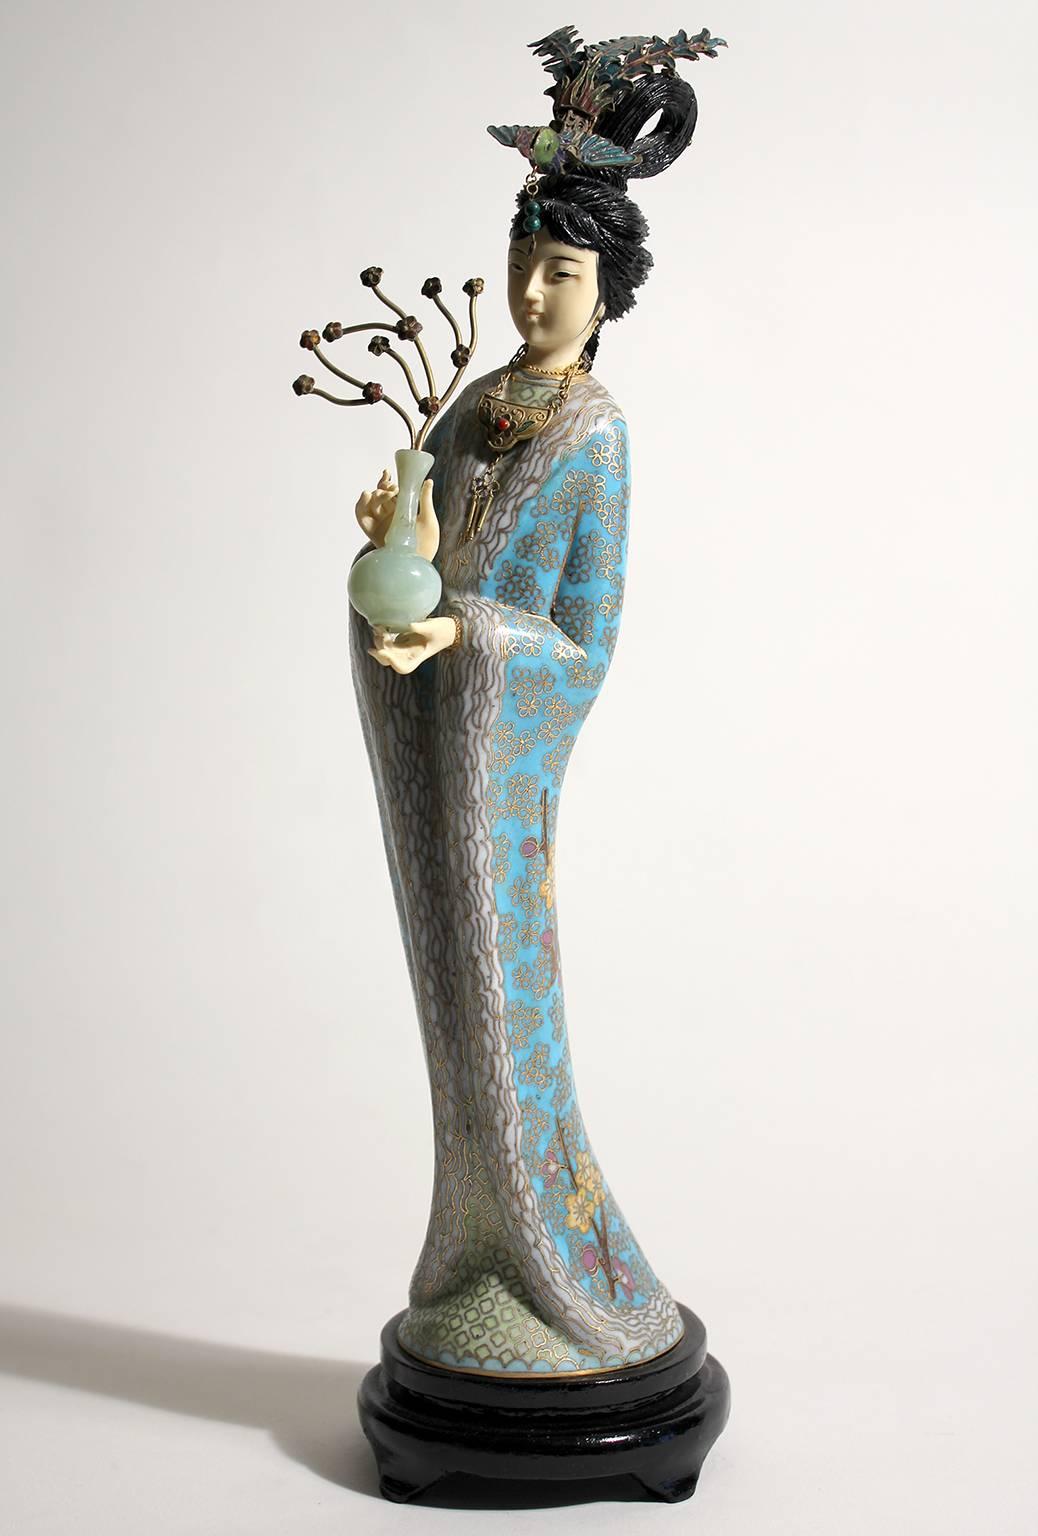 Superbe figurine/sculpture chinoise Guanyin en émail cloisonné. Livré avec le support en bois d'origine. Les mains et la tête sont sculptées. La couleur est superbe et les détails sont inégalés. Mesures : 14